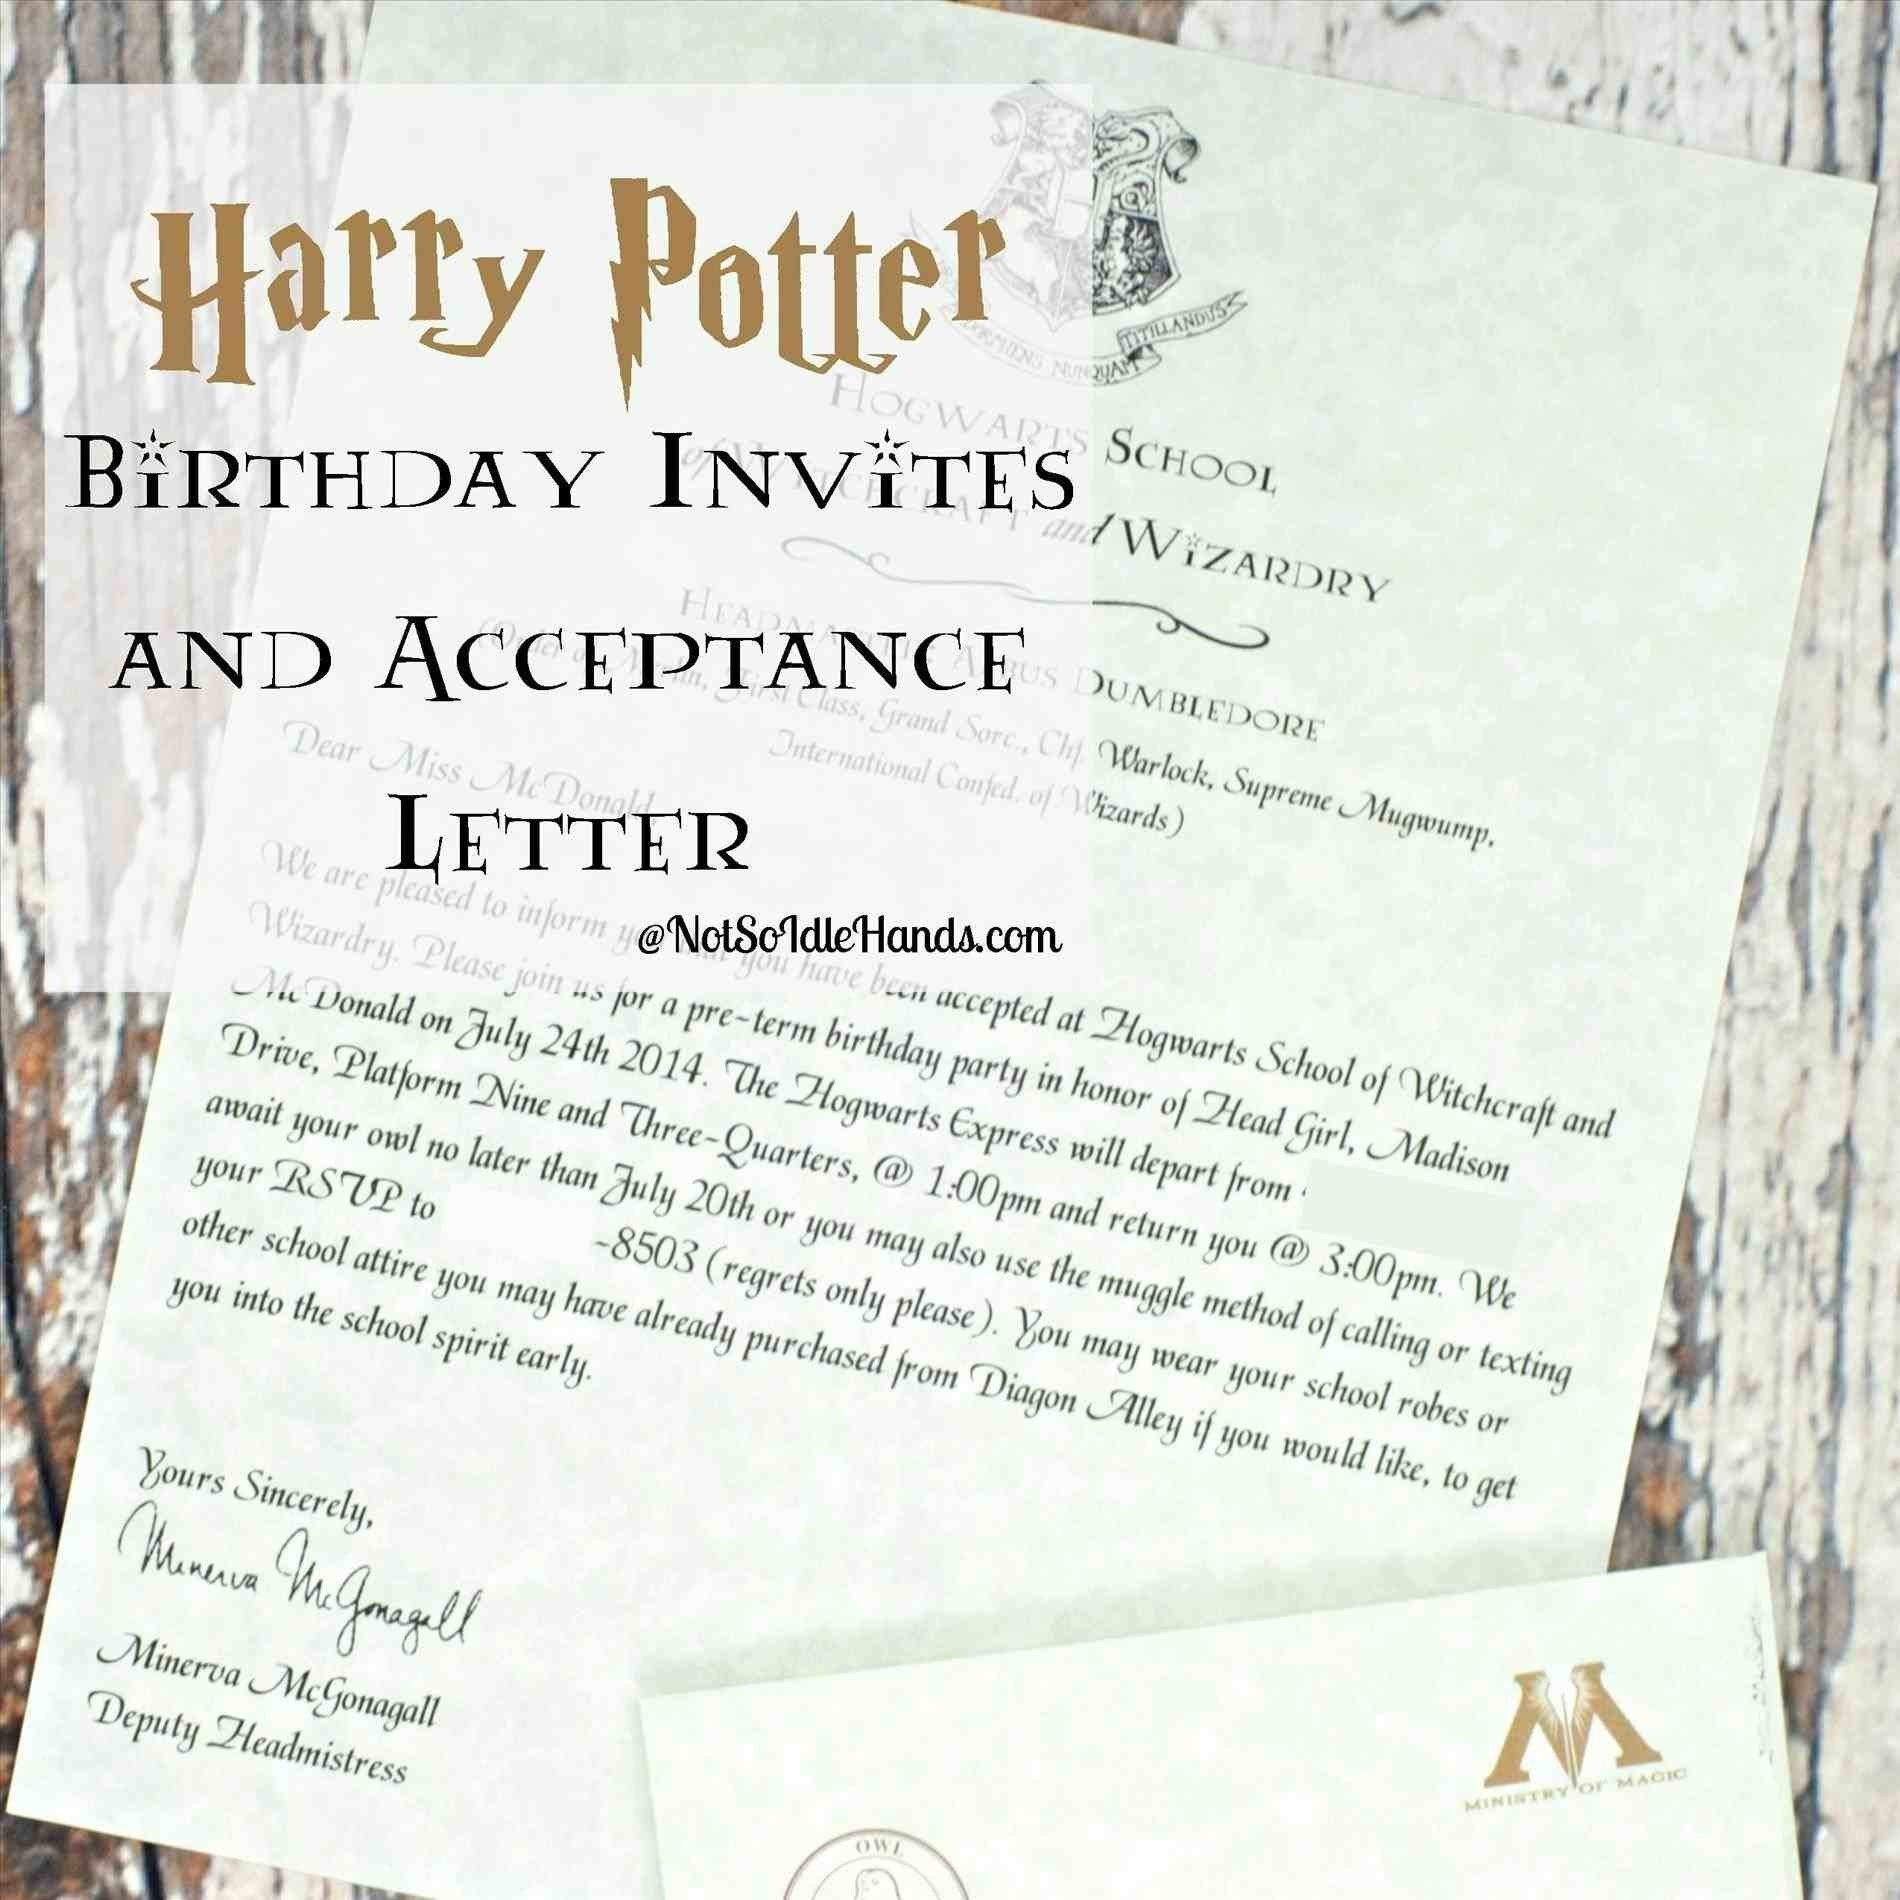 Hogwarts Acceptance Letter Template - Hogwarts Letter Template Free New Harry Potter Hogwarts Acceptance